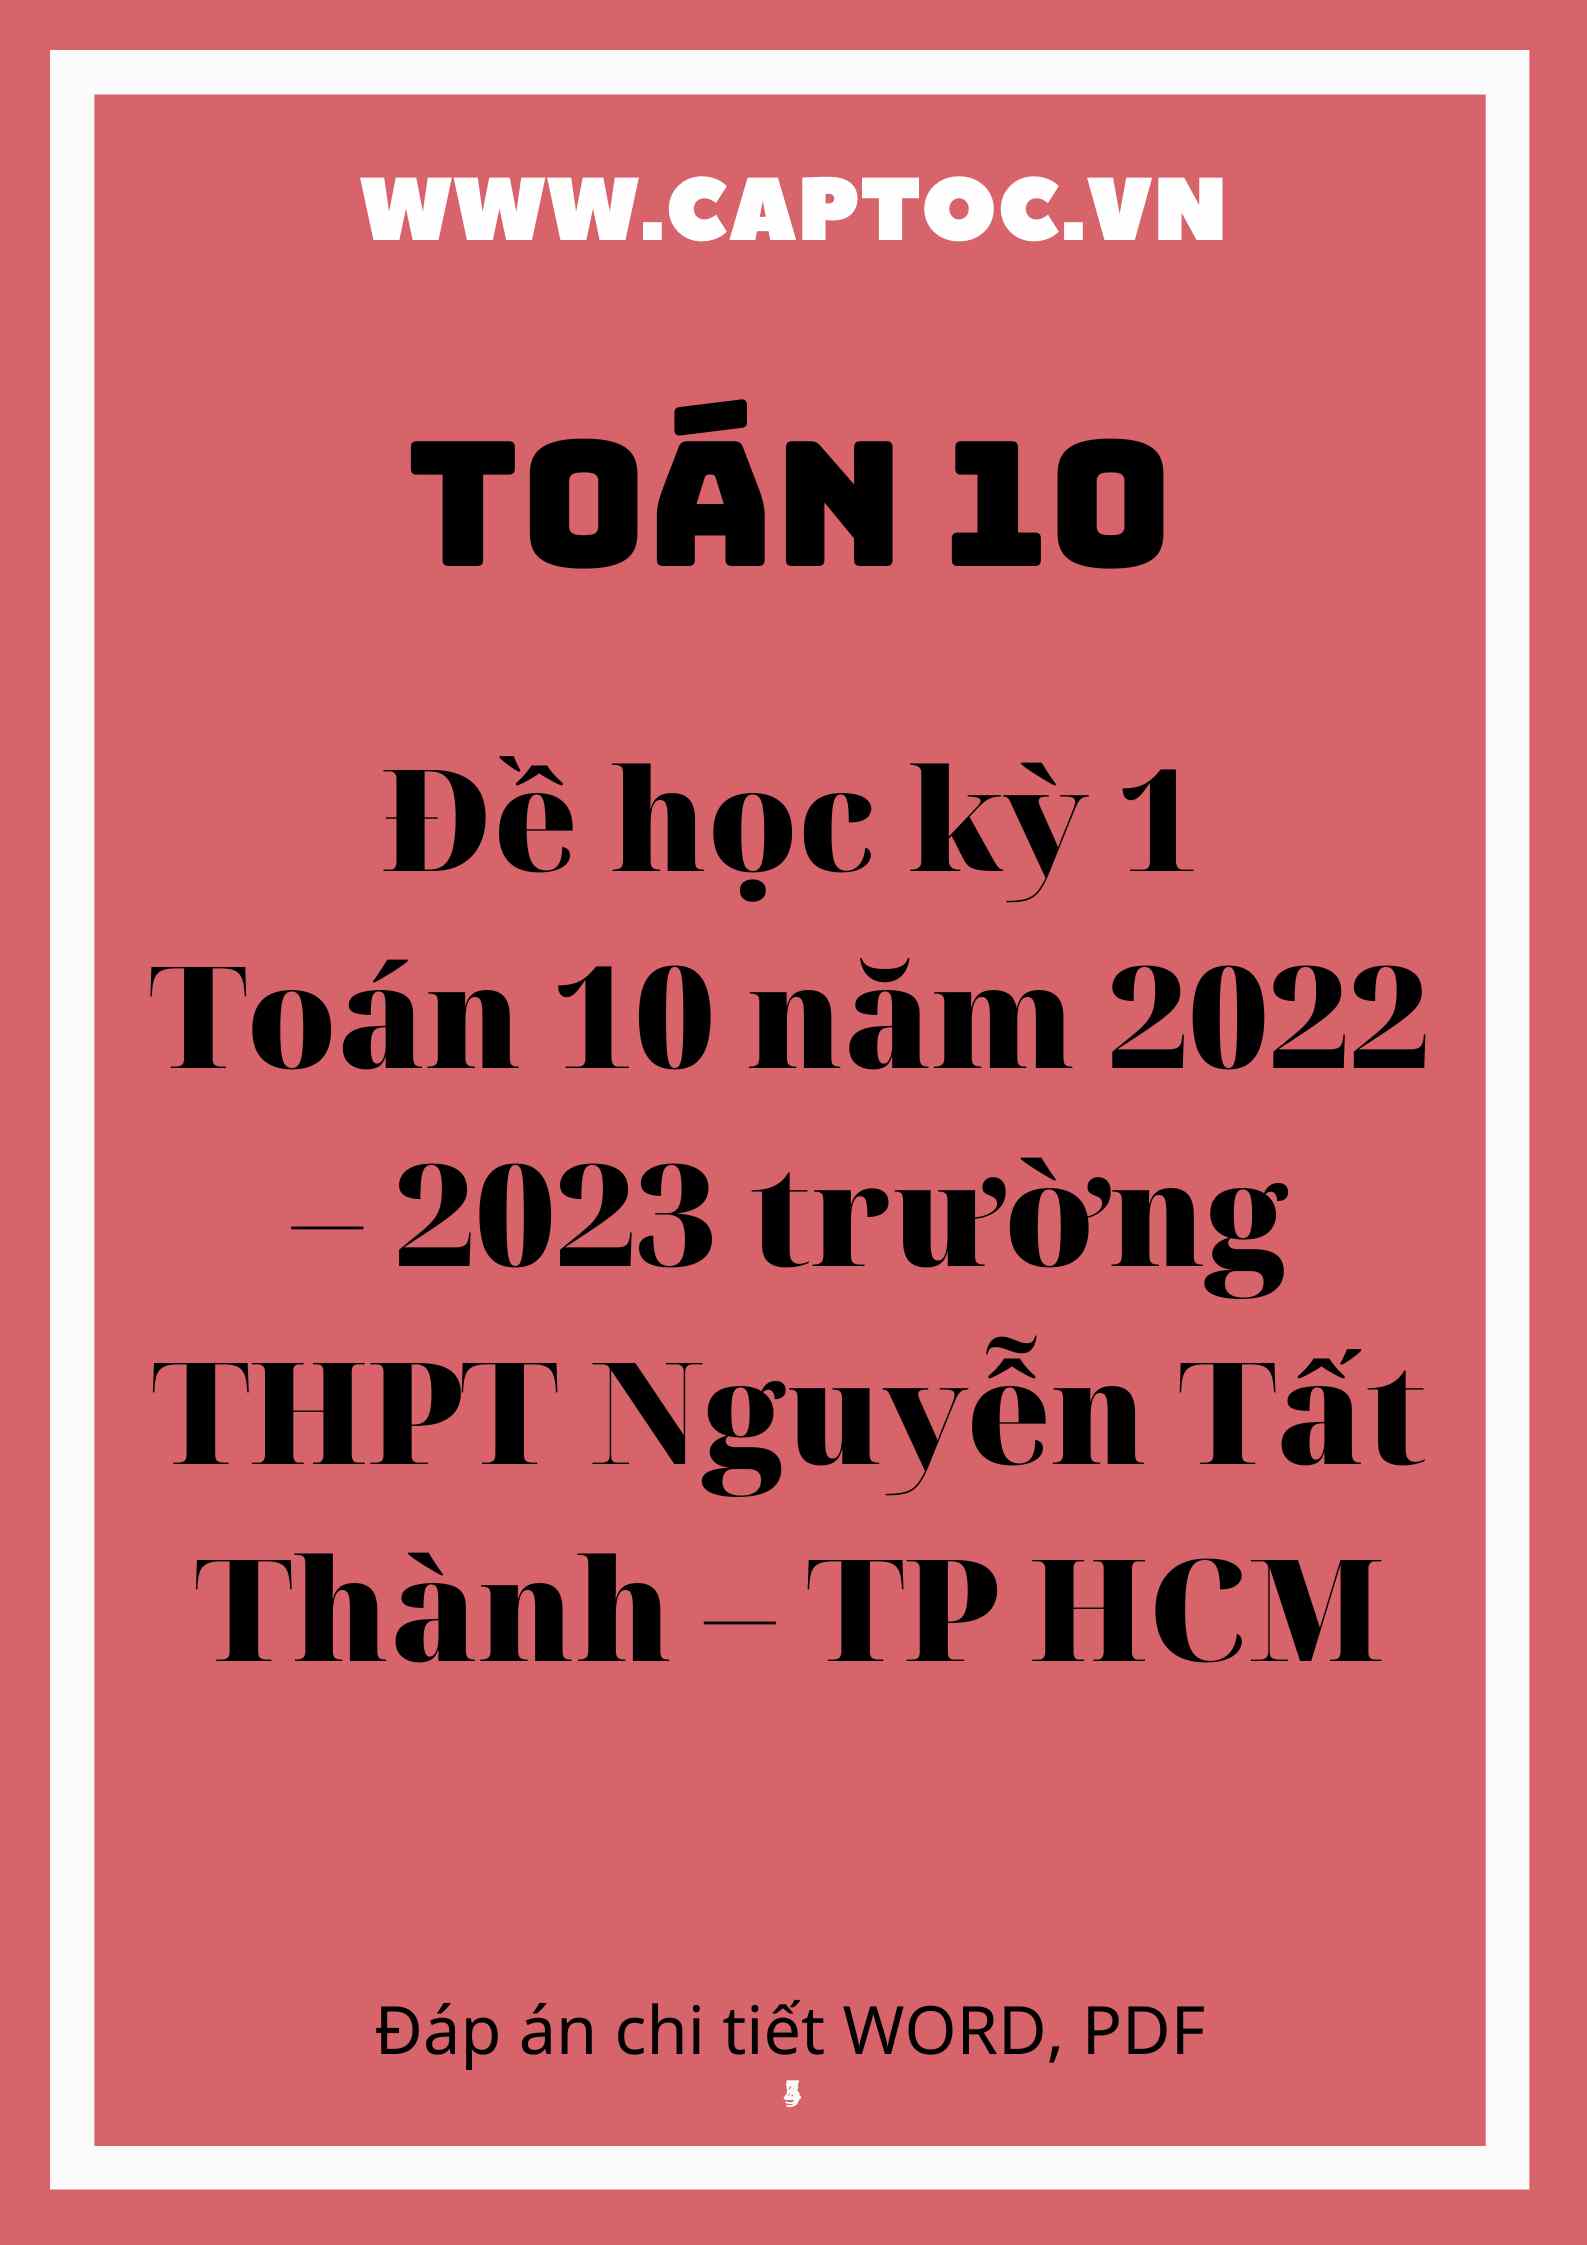 Đề học kỳ 1 Toán 10 năm 2022 – 2023 trường THPT Nguyễn Tất Thành – TP HCM